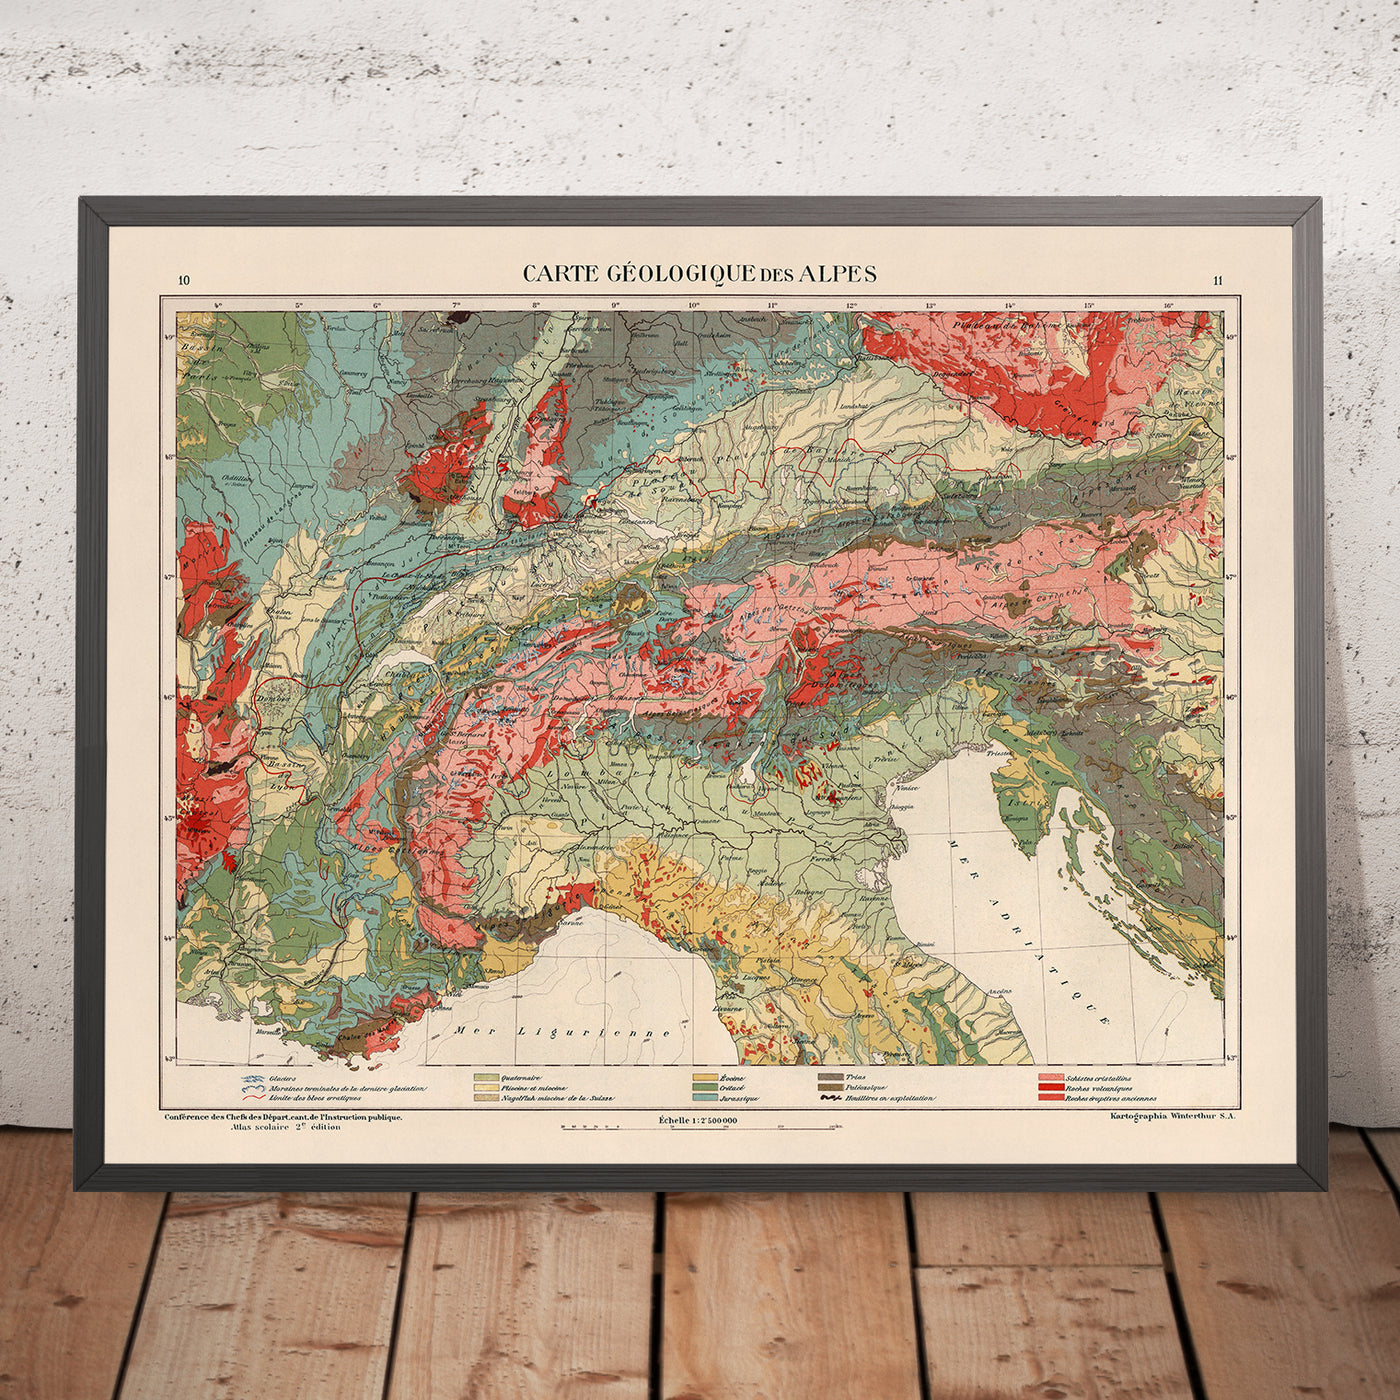 Ancienne carte de la région alpine par Kartographia Winterthur, 1921 : Suisse, Autriche, régions de France, d'Italie et d'Allemagne, Slovénie, caractéristiques géologiques détaillées